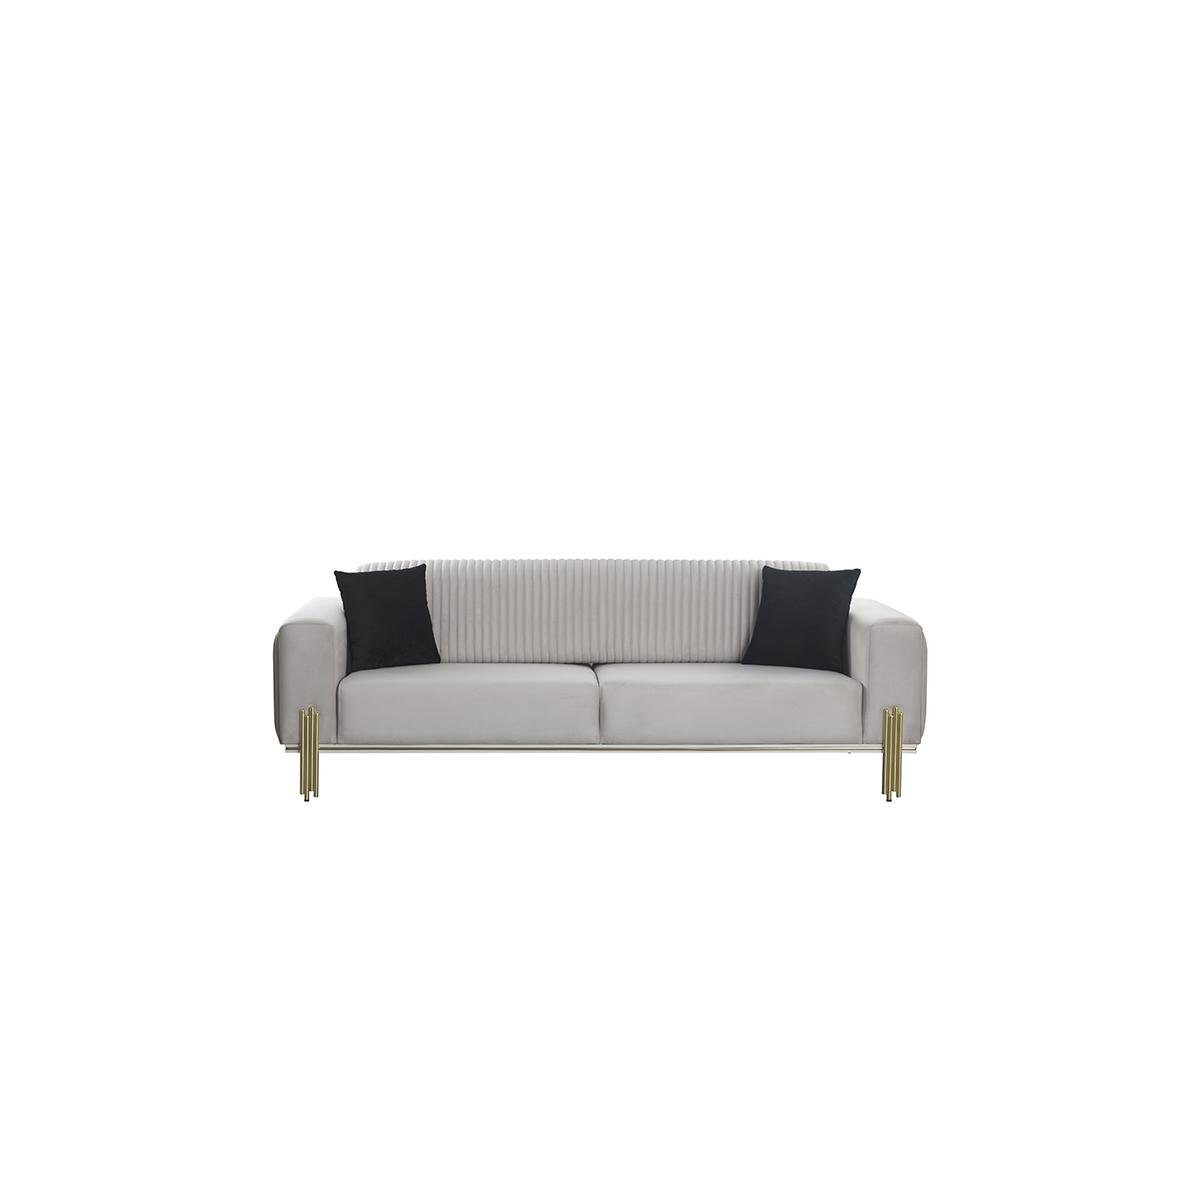 Polstermöbel Europa 3-Sitzer Teile, Sofa Moderne Dreisitzer 1 JVmoebel Weißer in Wohnzimmermöbel Neu, Made